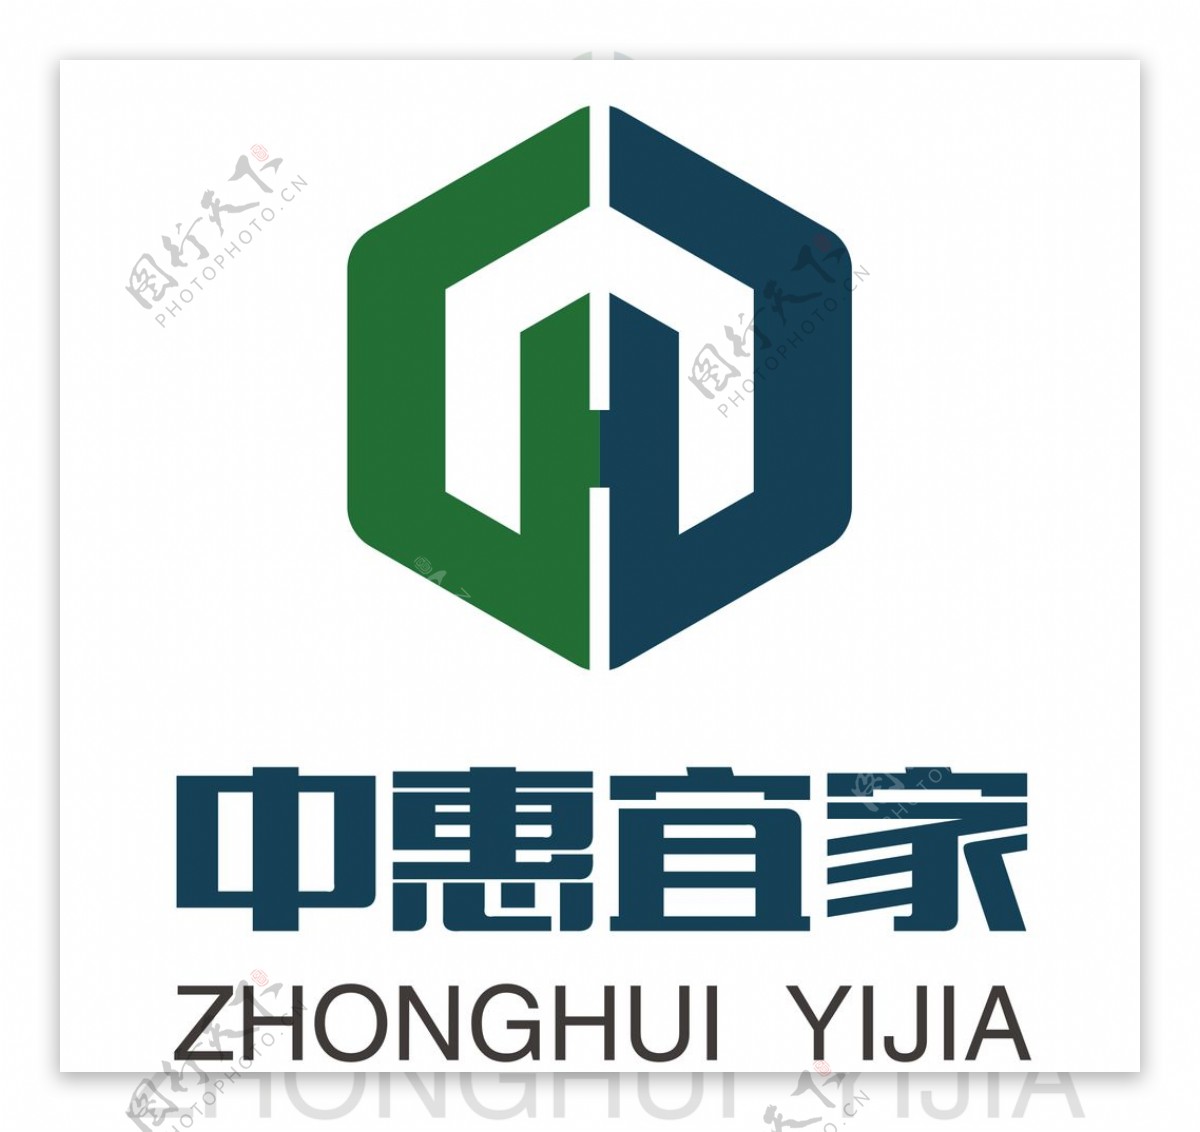 中惠宜家logo